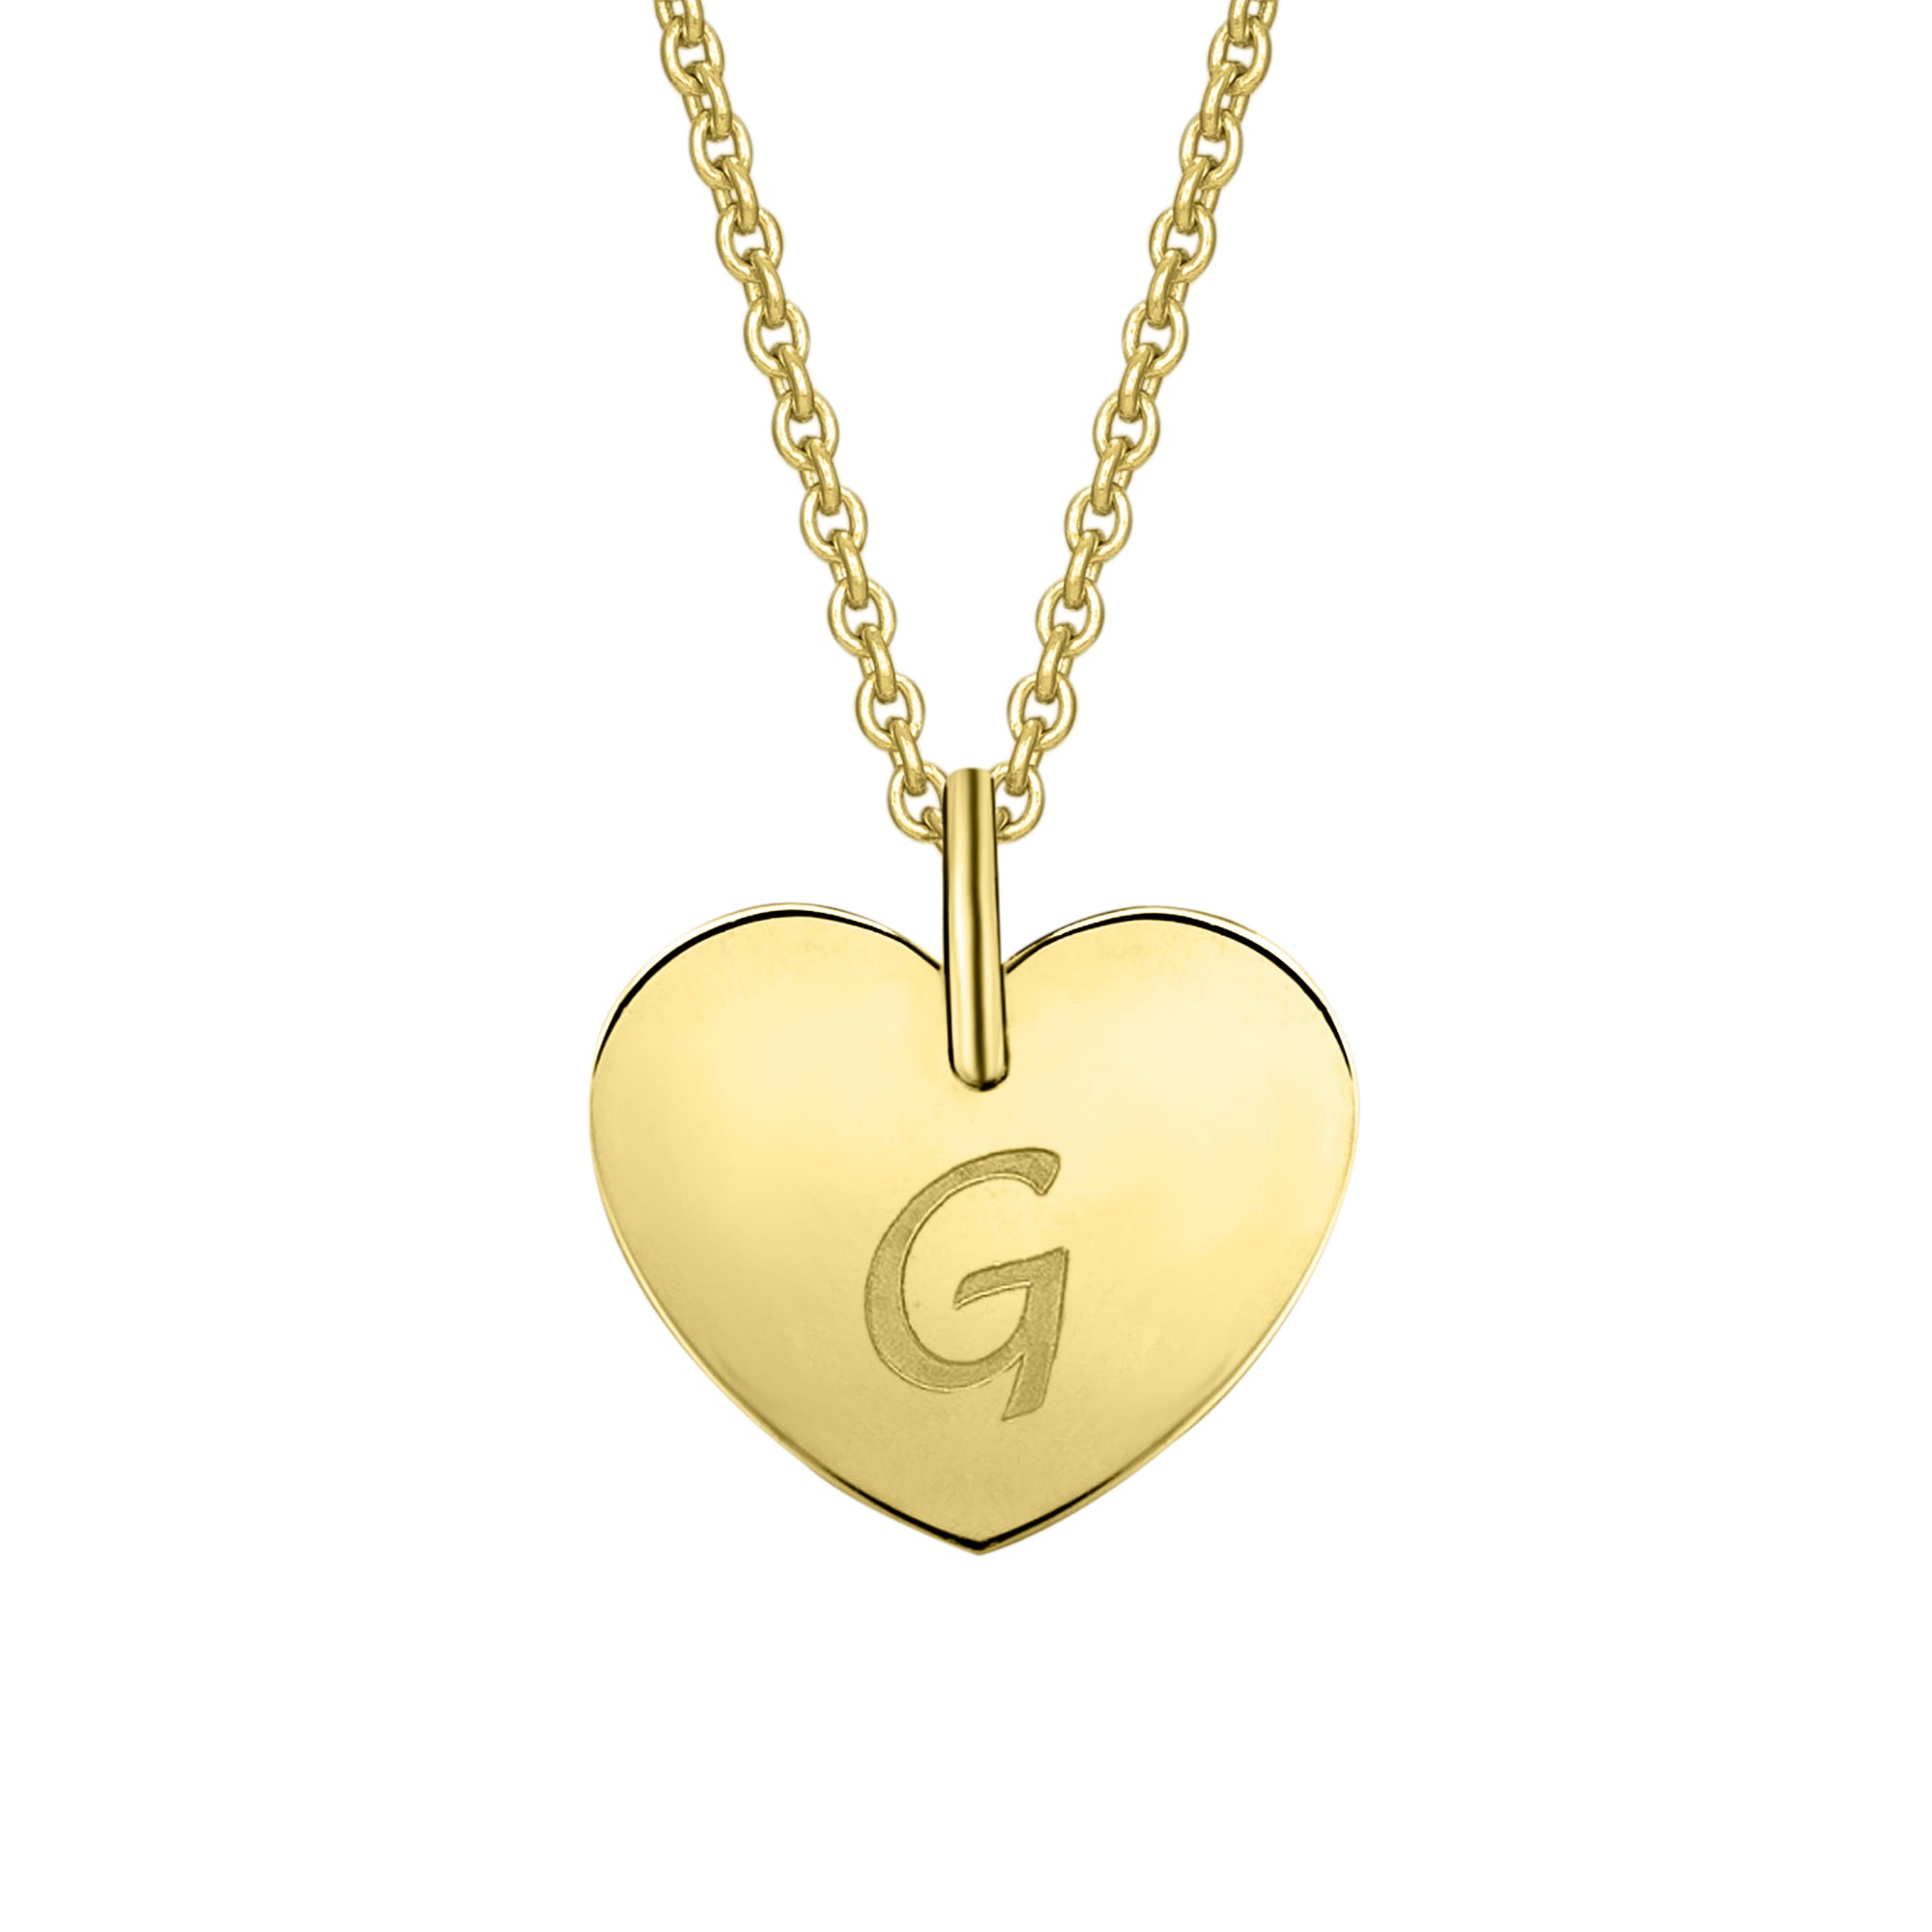 ONE ELEMENT Kettenanhänger »Herz mit Gravur G Buchstaben Anhänger aus 333 Gelbgold«, Damen Gold Schmuck Herz mit Gravur G